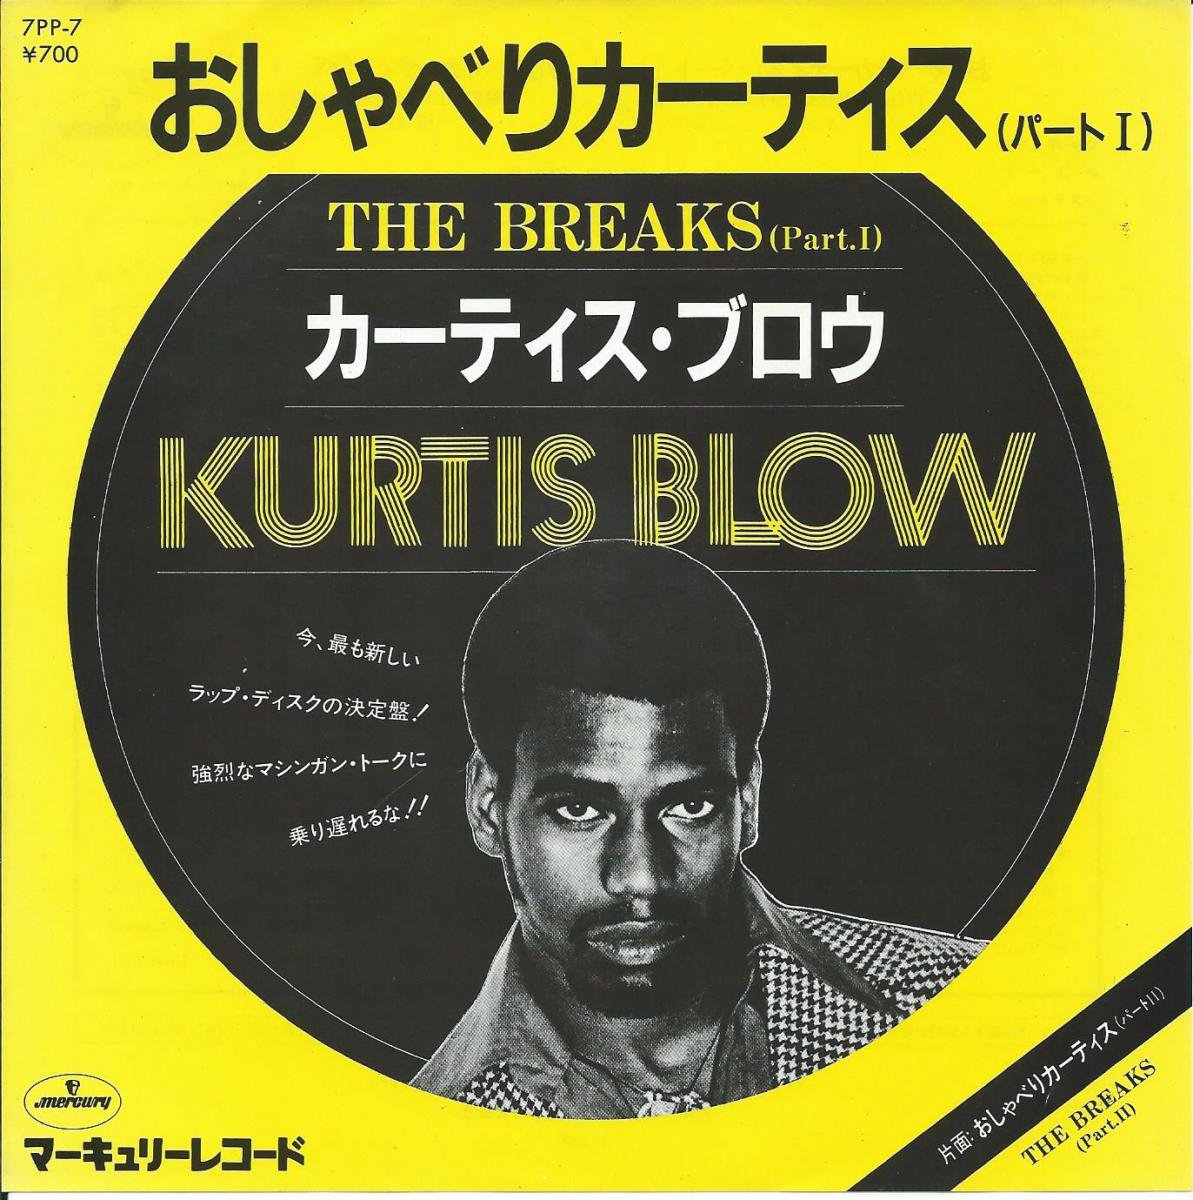 カーティス・ブロウ KURTIS BLOW / おしゃべりカーティス (パート1) THE BREAKS (PART.1) (7